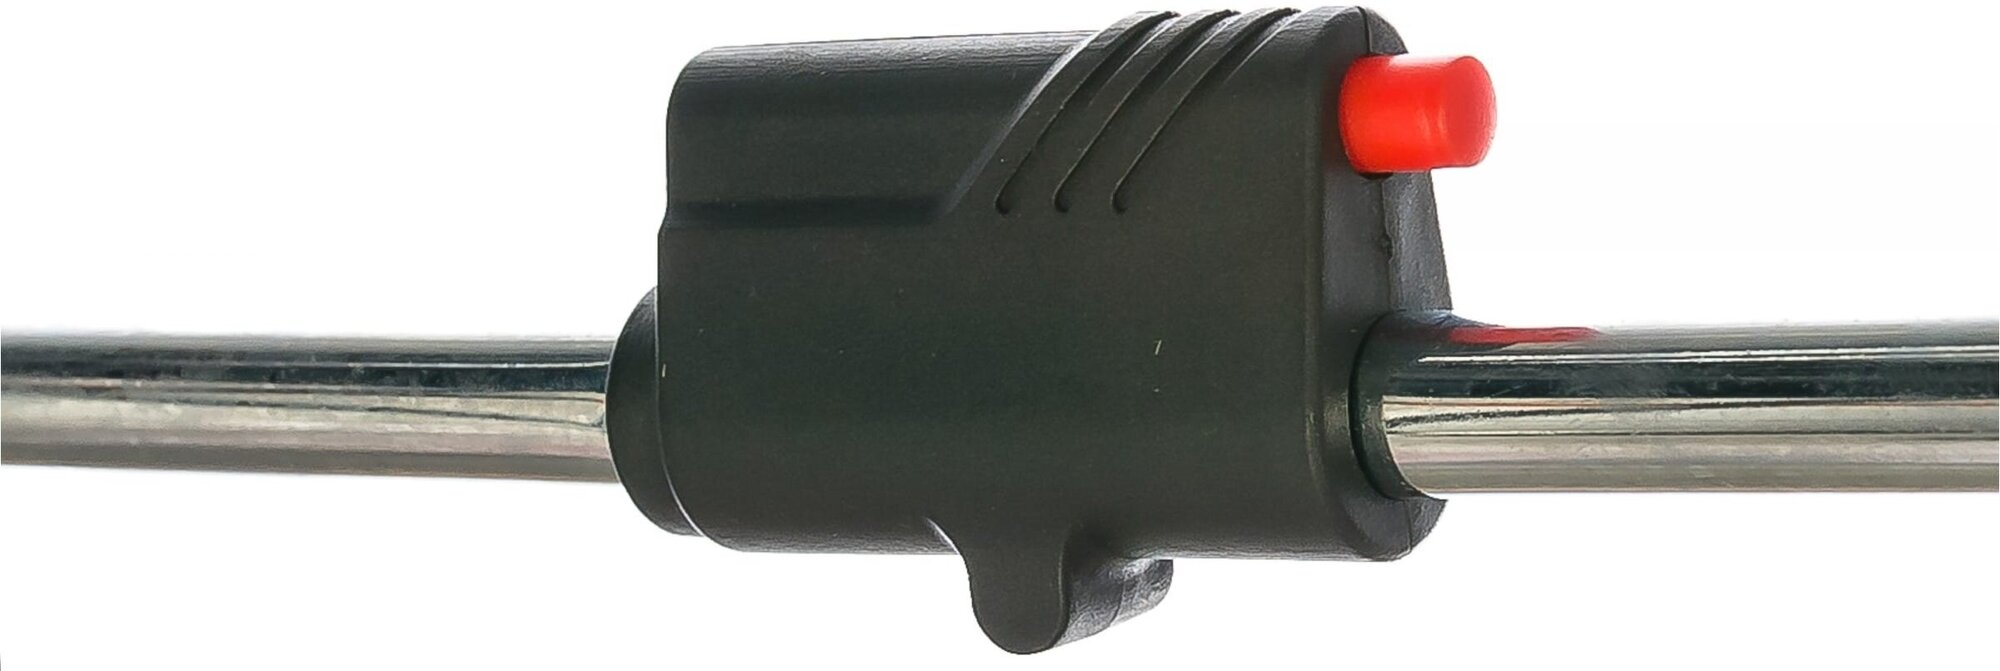 Удлиненная газовая горелка-насадка GT-22 с пьезоподжигом и пластиковой рукоятью